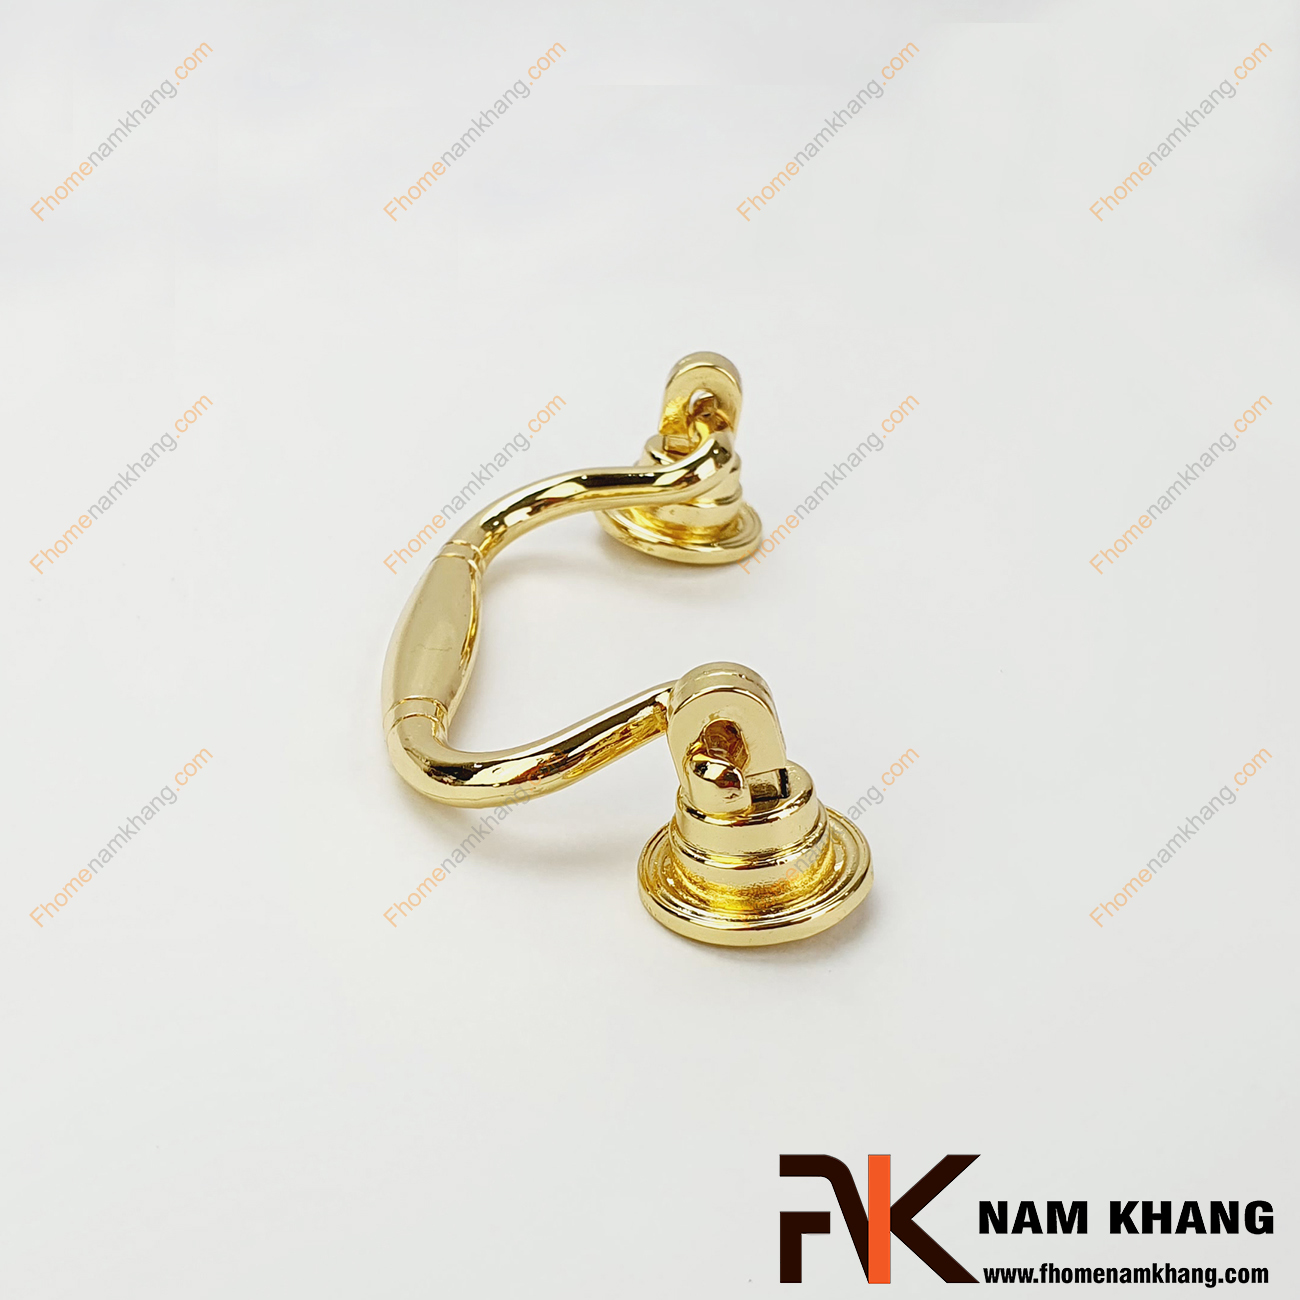 Tay nắm tủ dạng vòng màu vàng đồng NK100-80VB là một dạng tay nắm kết hợp khi thiết kế với 2 khuôn dạng bao gồm phần đế và vòng nắm. Sản phẩm theo kiểu tay rơi có màu sắc nhẹ nhàng dễ dàng phối hợp trên nhiều phong cách tủ kệ